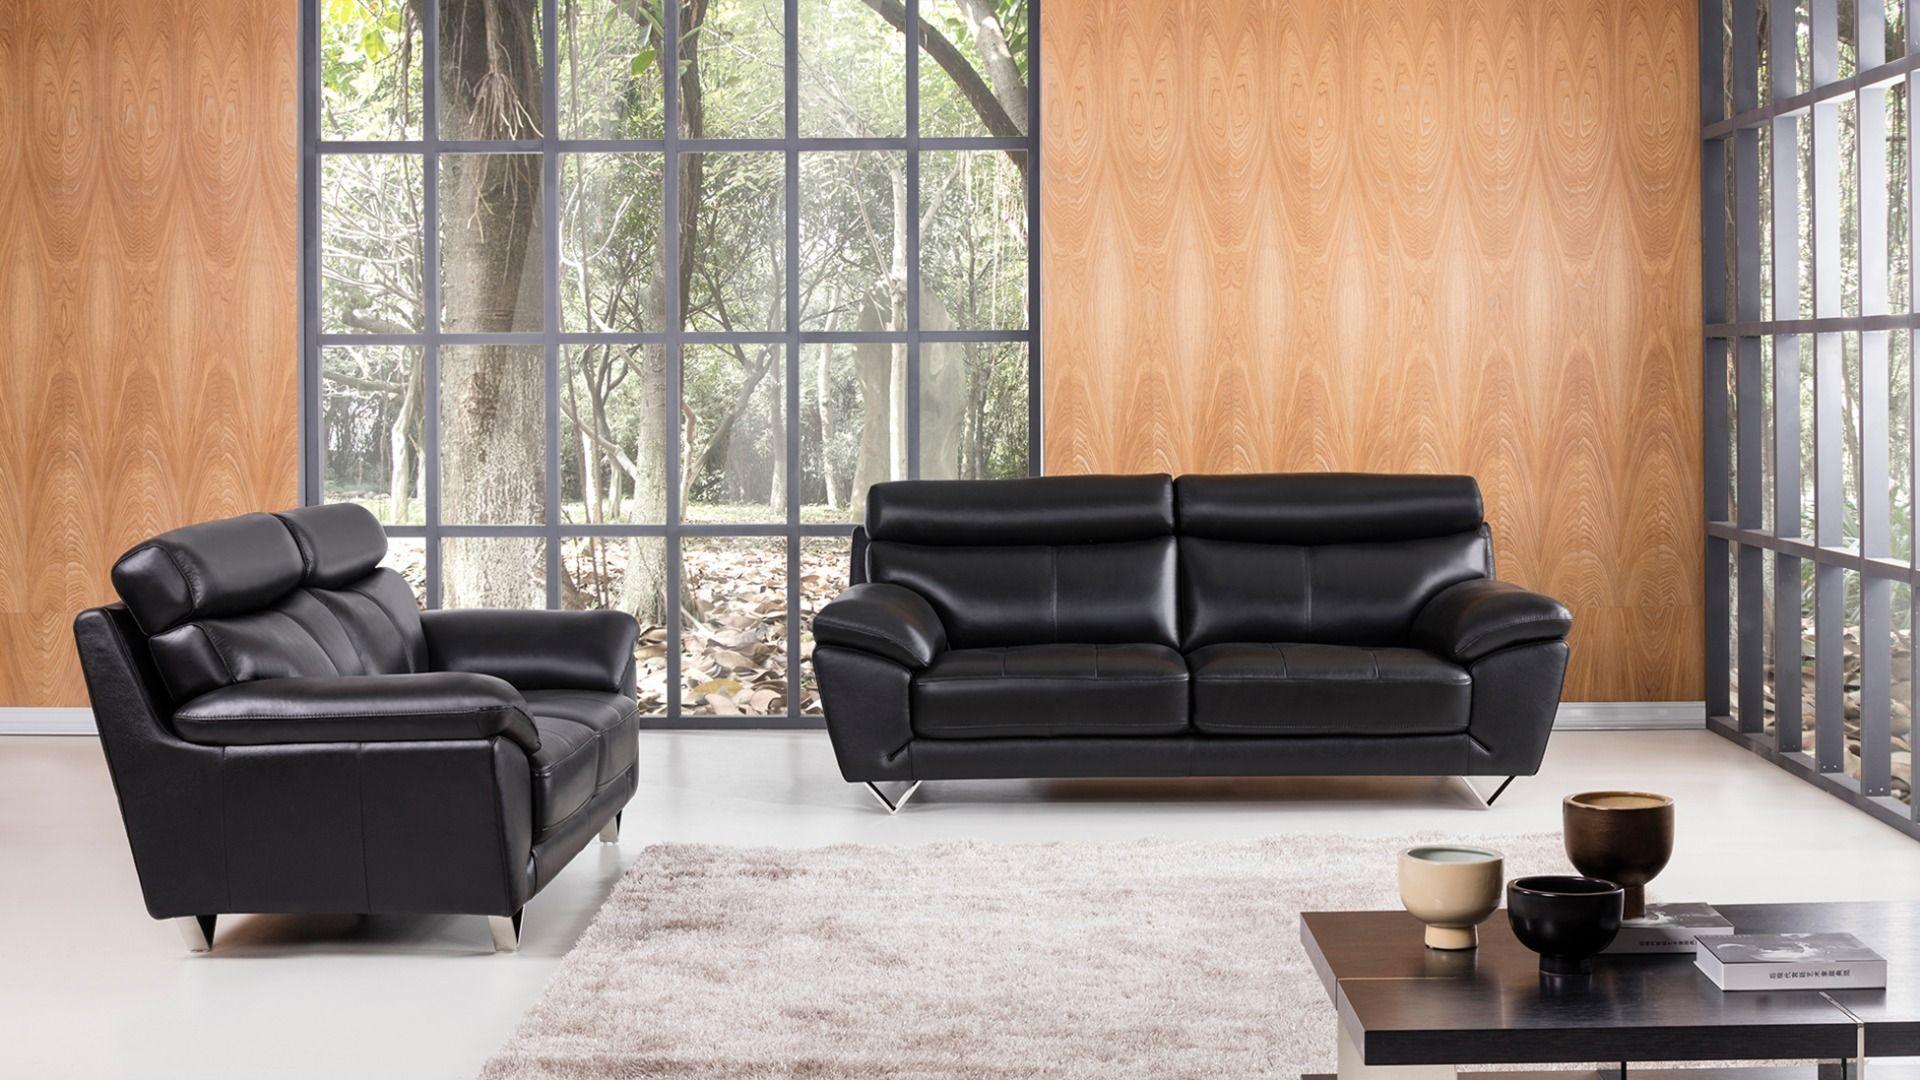 Contemporary, Modern Sofa Set EK078-BK EK078-BK Set-2 in Black Italian Leather